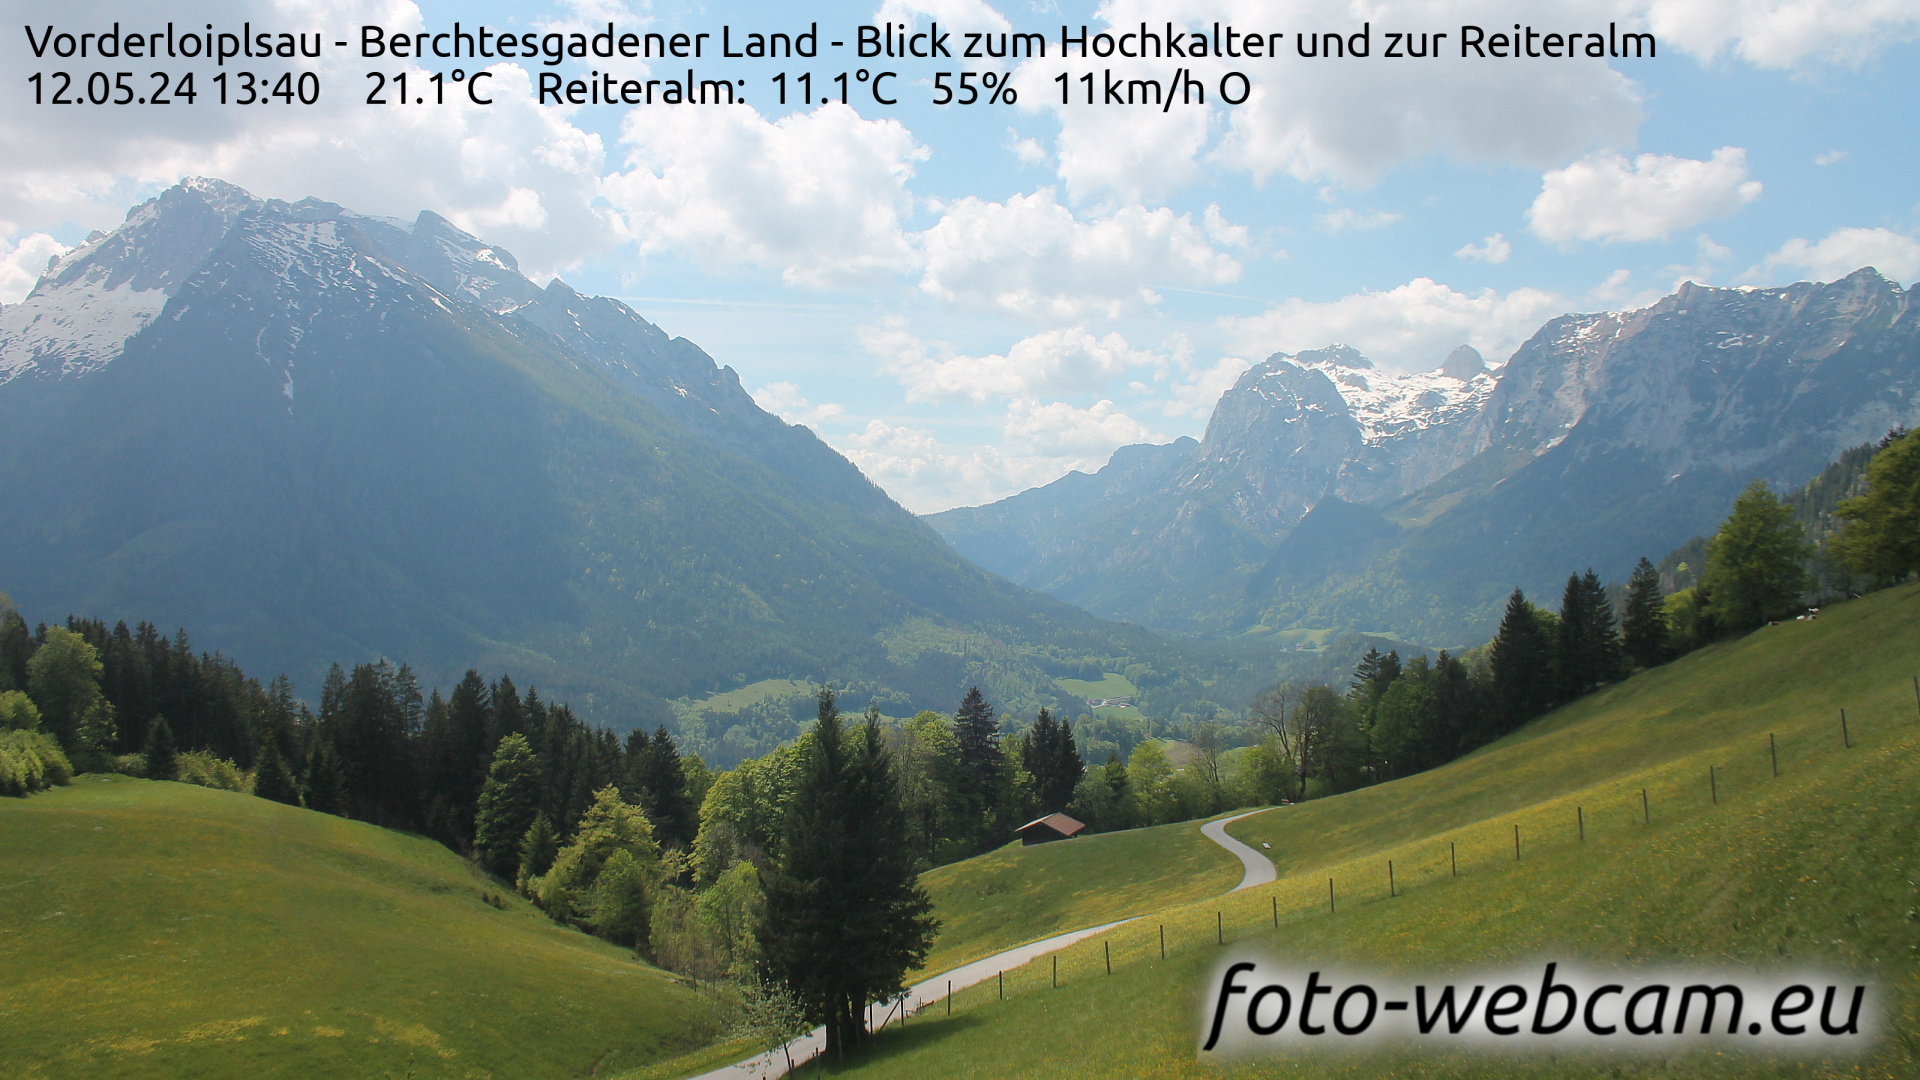 Ramsau bei Berchtesgaden Je. 13:48